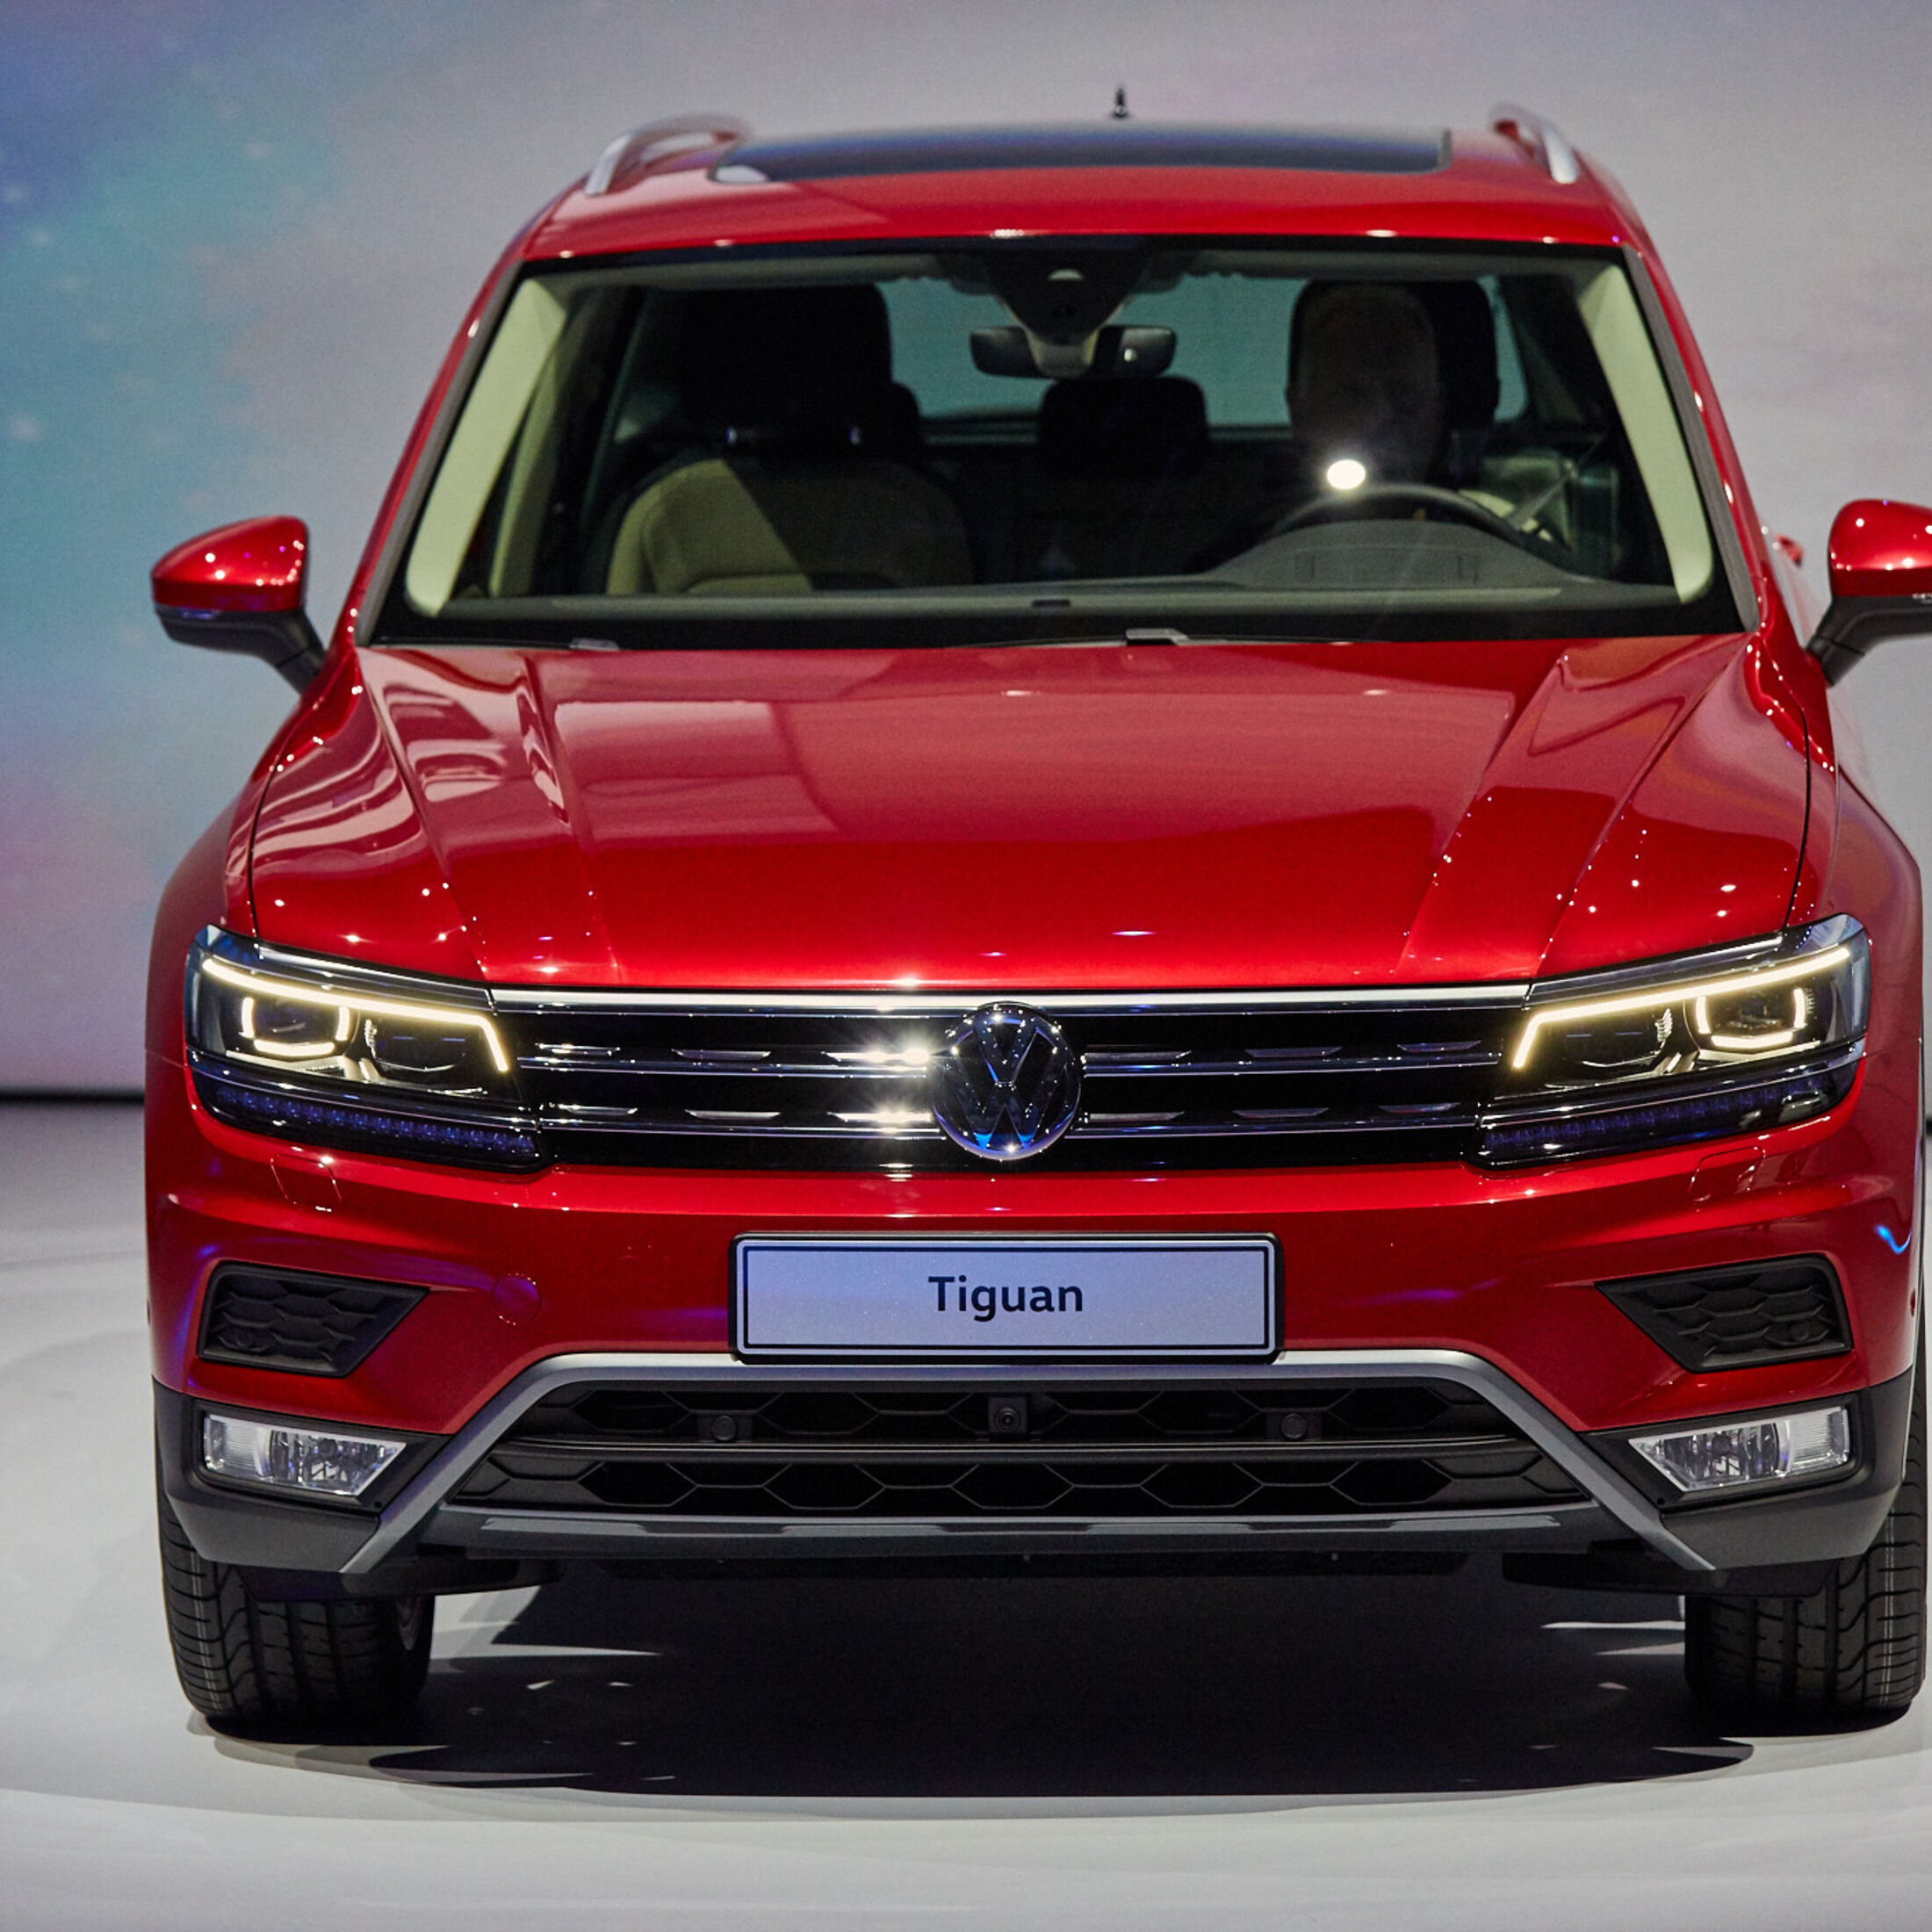 Volkswagen Zubehör bringt Zubehör für den Tiguan - Auto